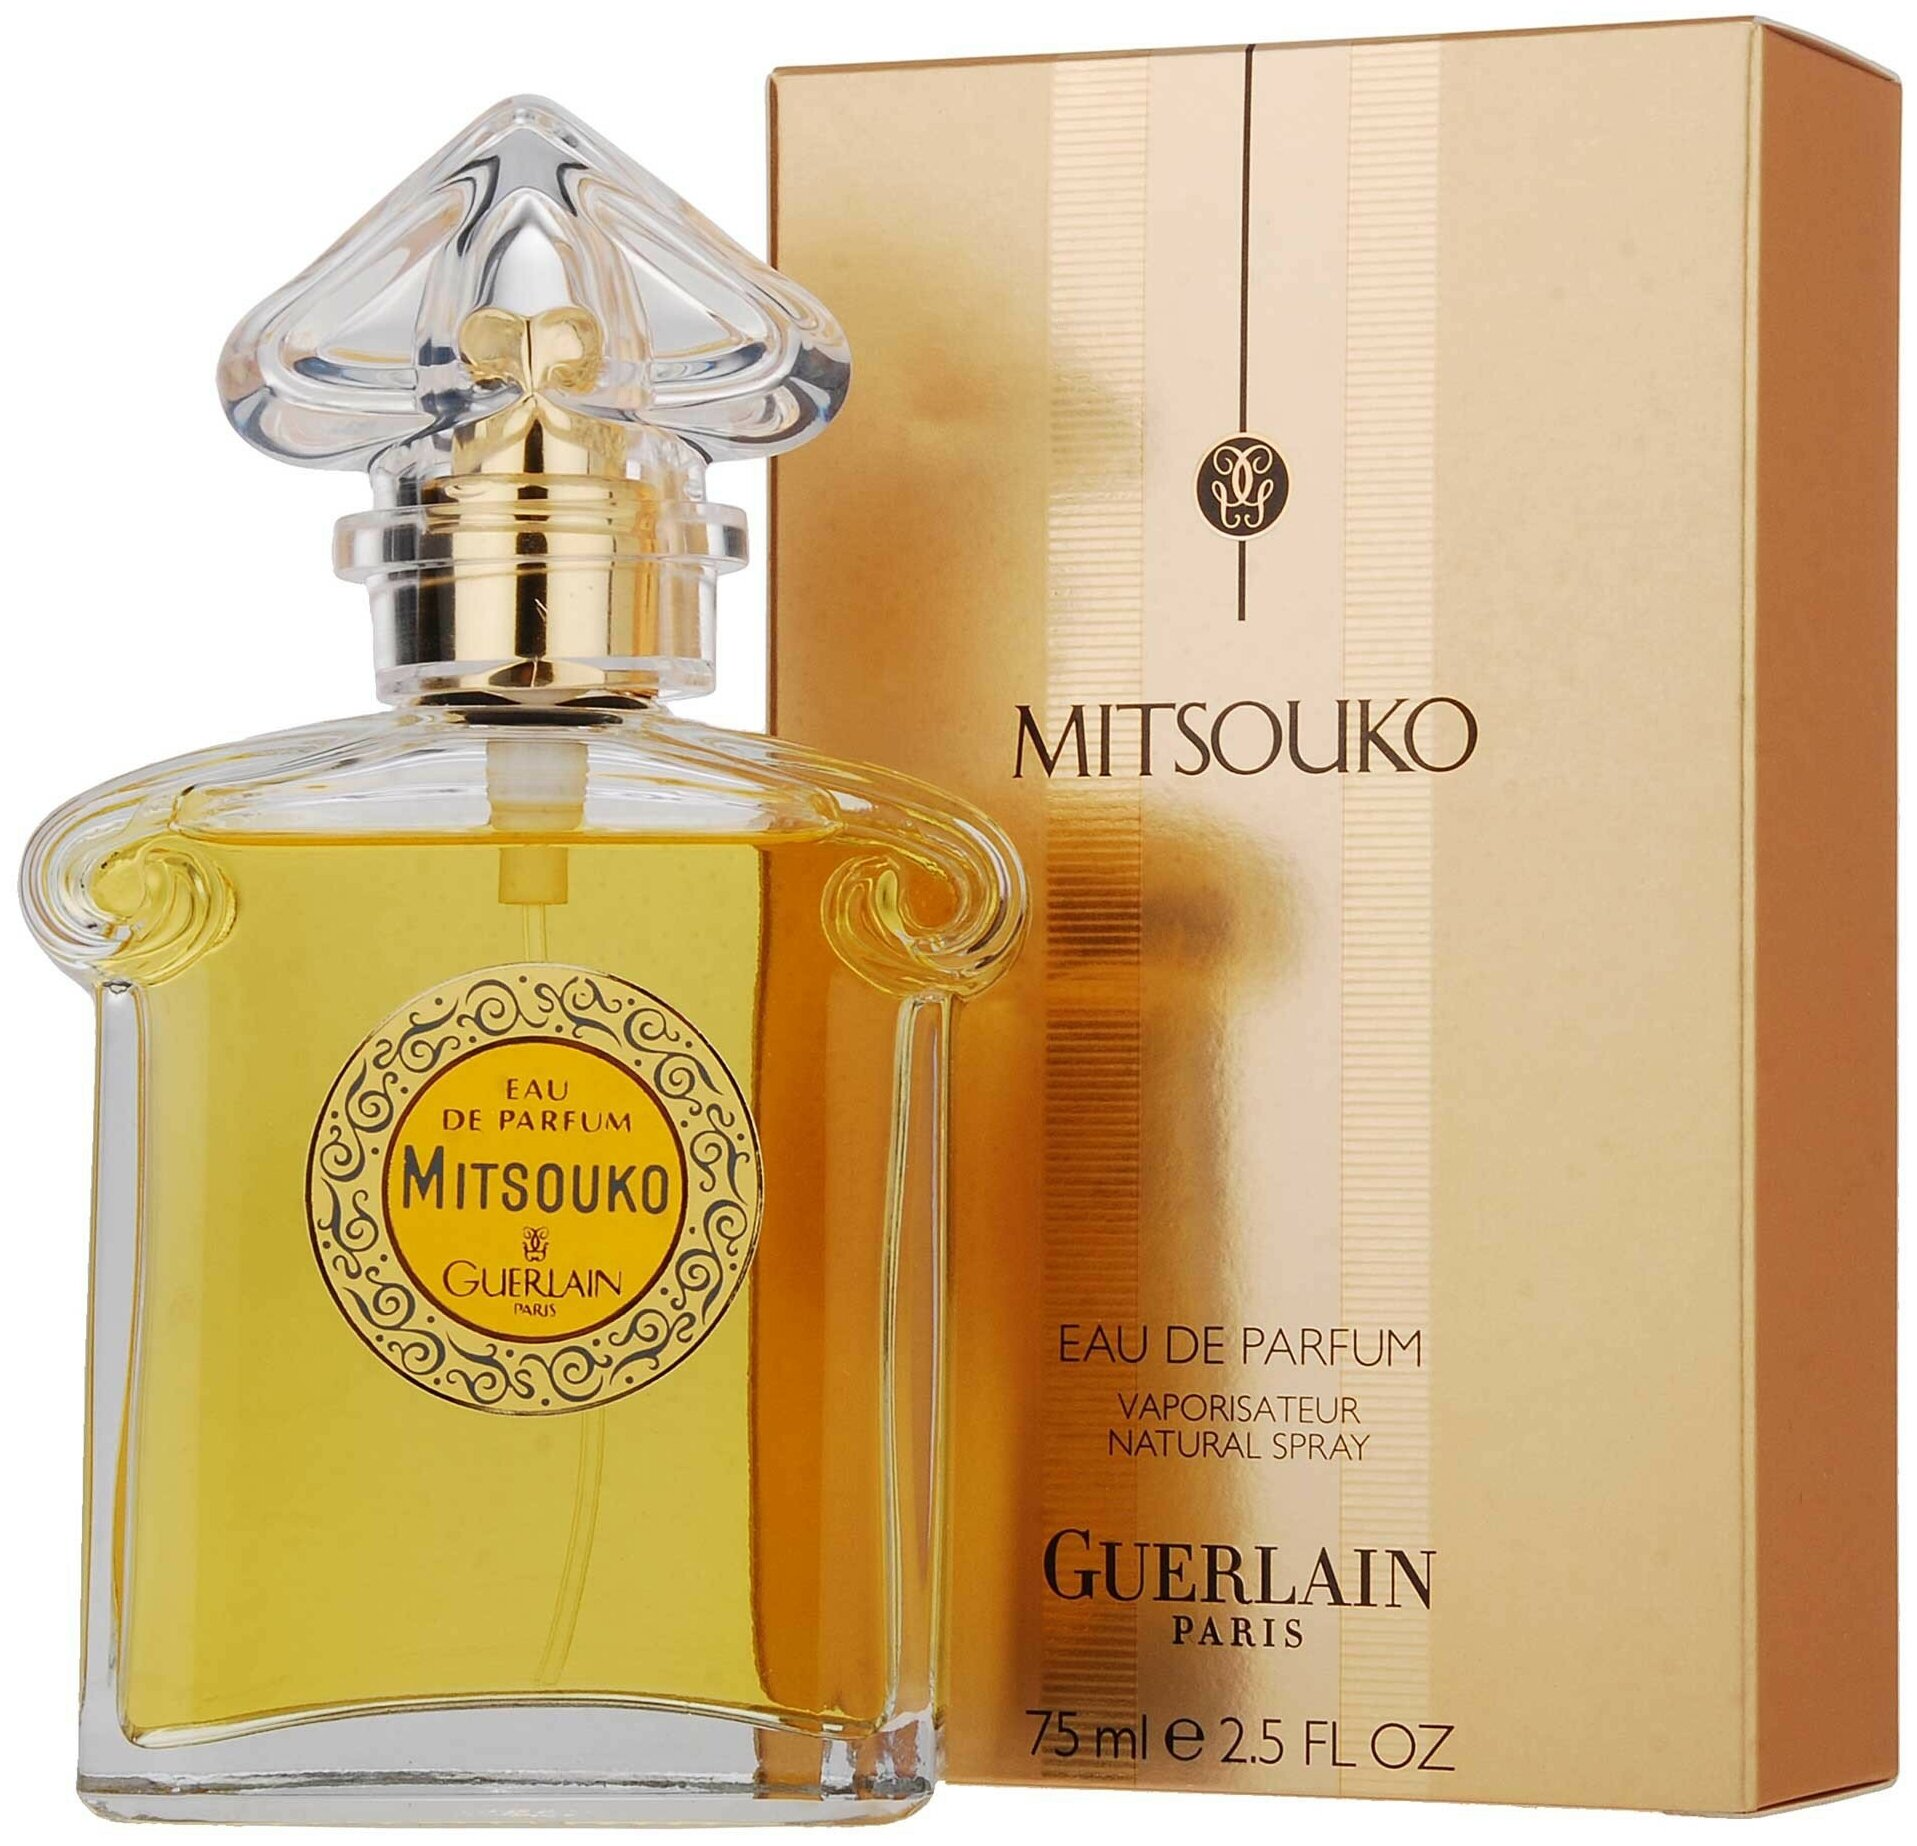 Подробные характеристики Guerlain парфюмерная вода Mitsouko, отзывы покупат...